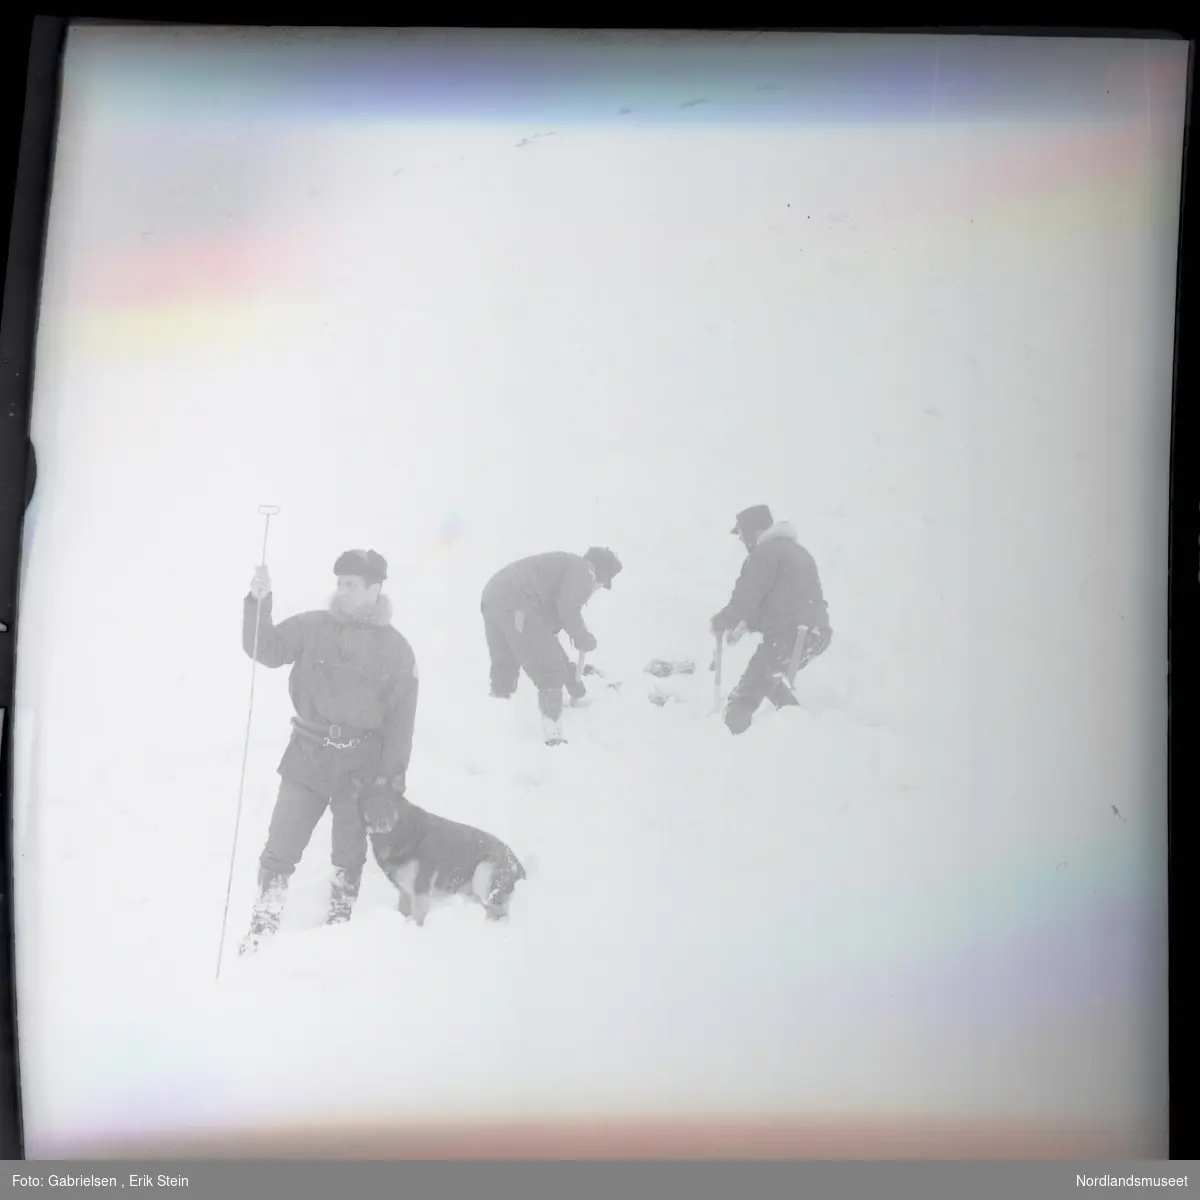 Fotografi av en mann kledd i vinterklær som står med en hund på snøen på fjellet i en snøstorm og holder en stang i nærheten av to menn som arbeider med noen ting som ligger i snøen 
i en snøstorm på fjellet